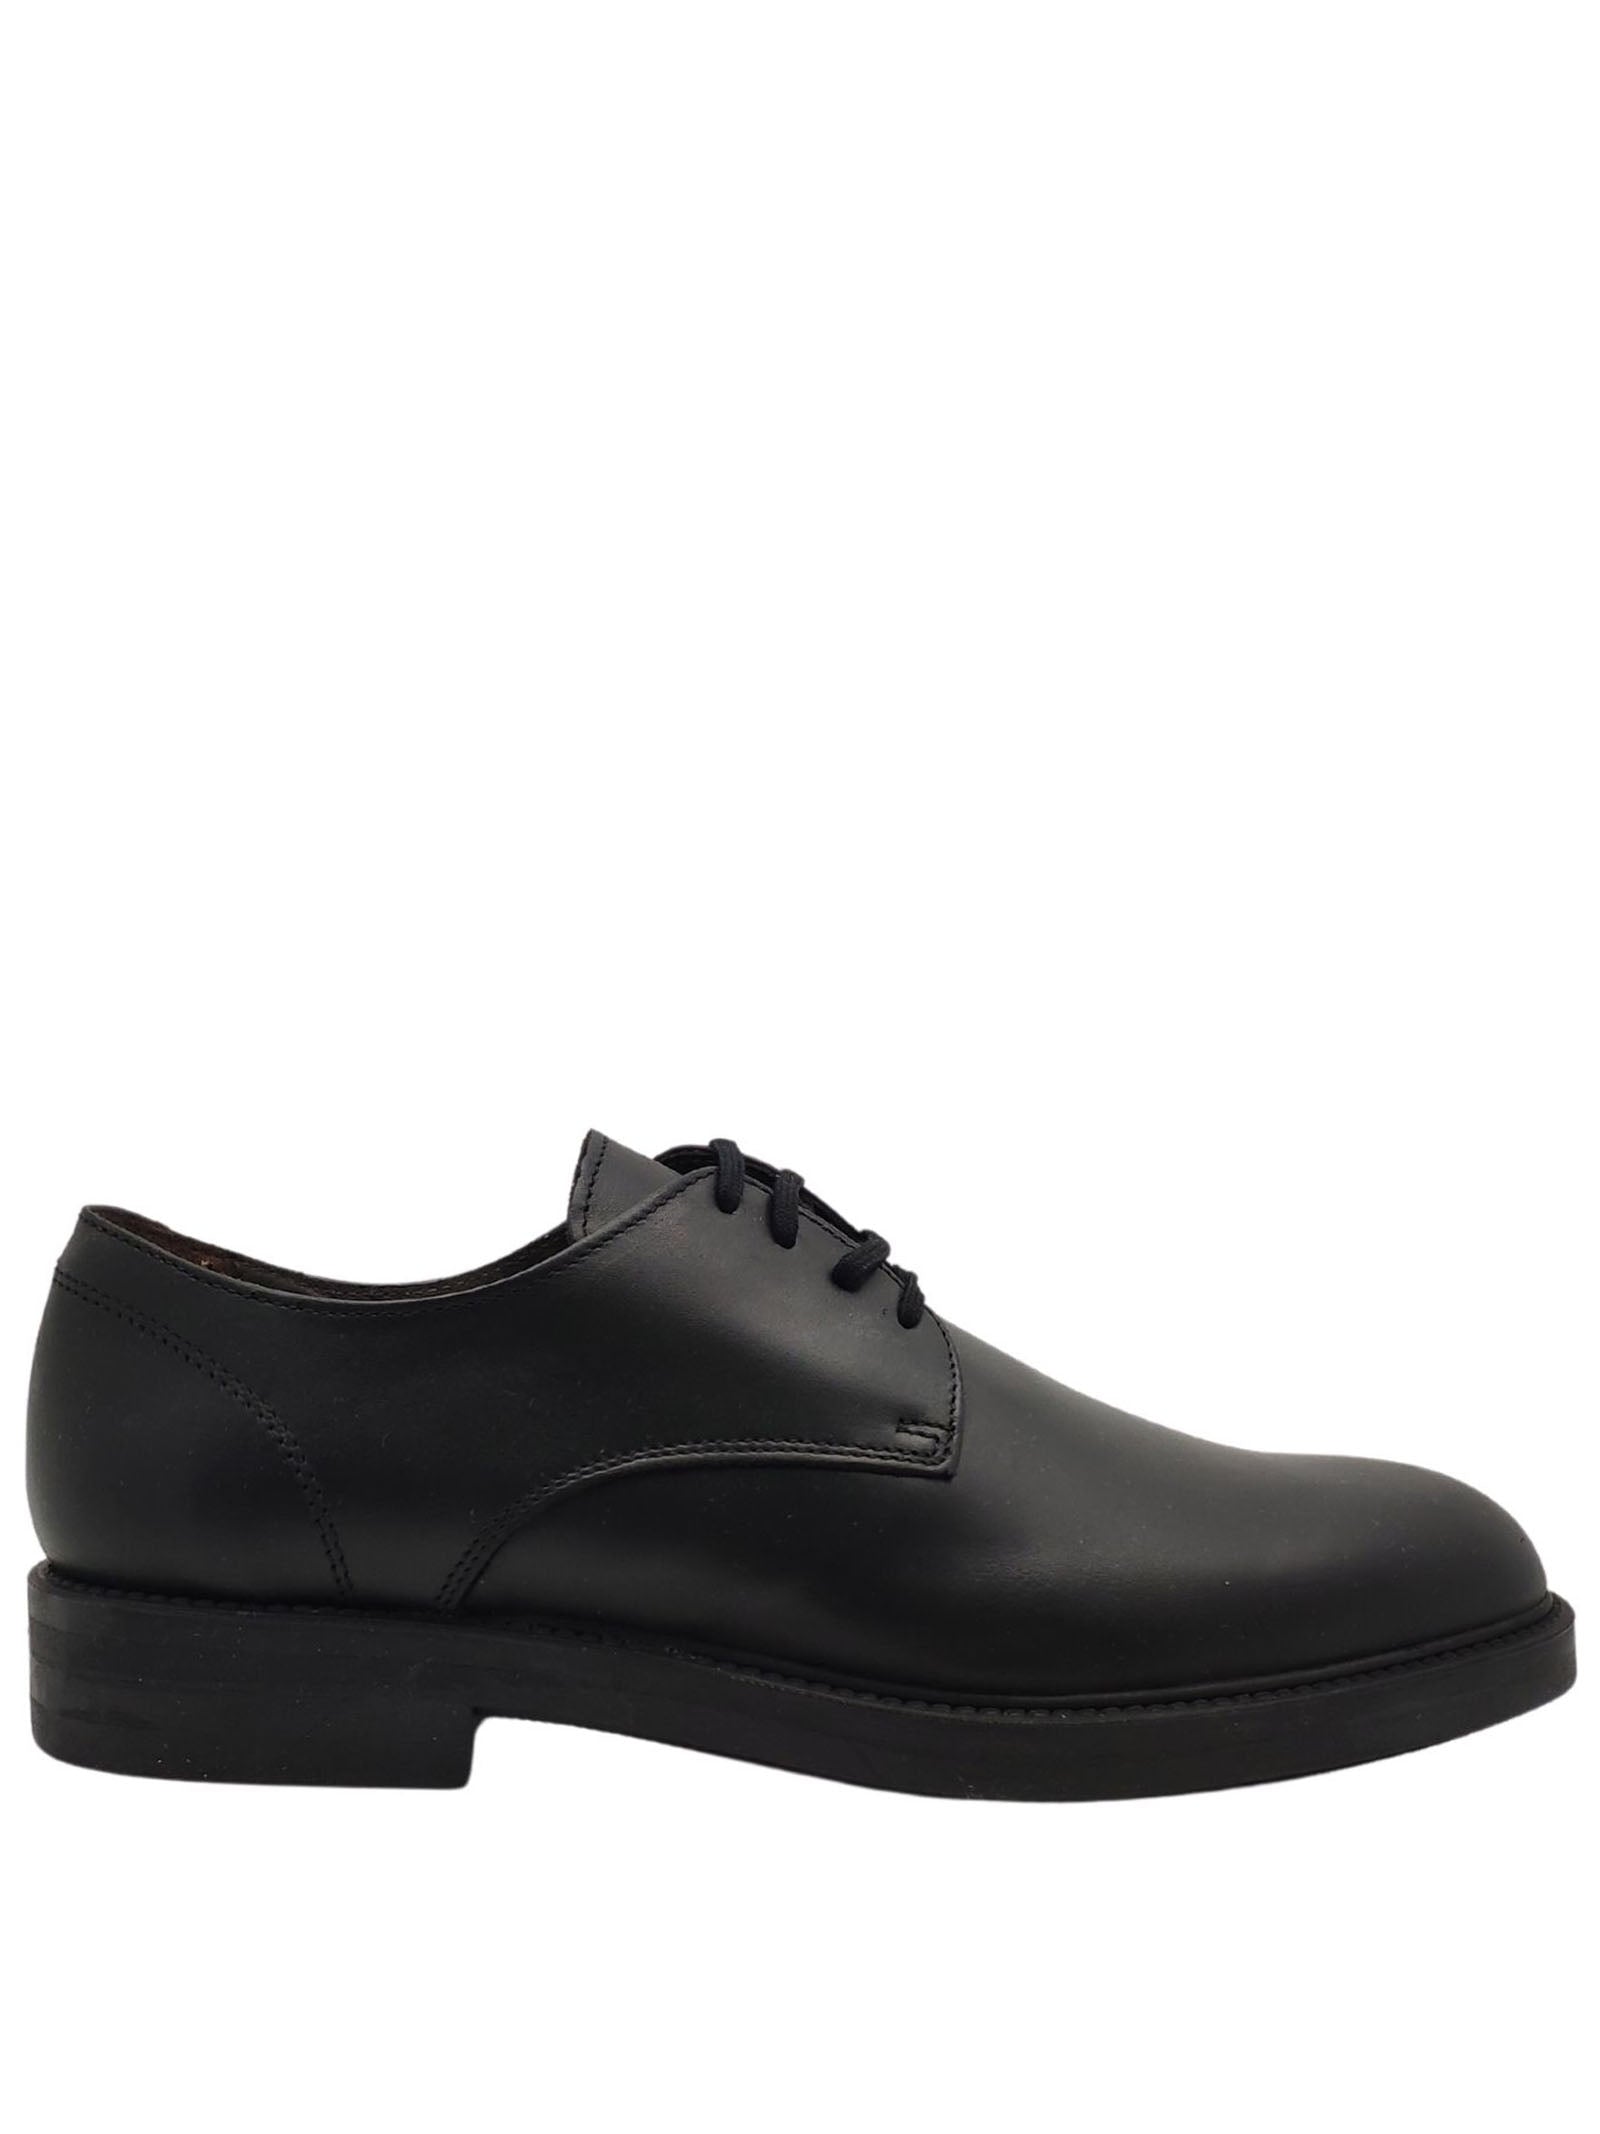 Chaussures à lacets imperméables pour hommes en cuir noir mat avec tige lisse et semelle en caoutchouc